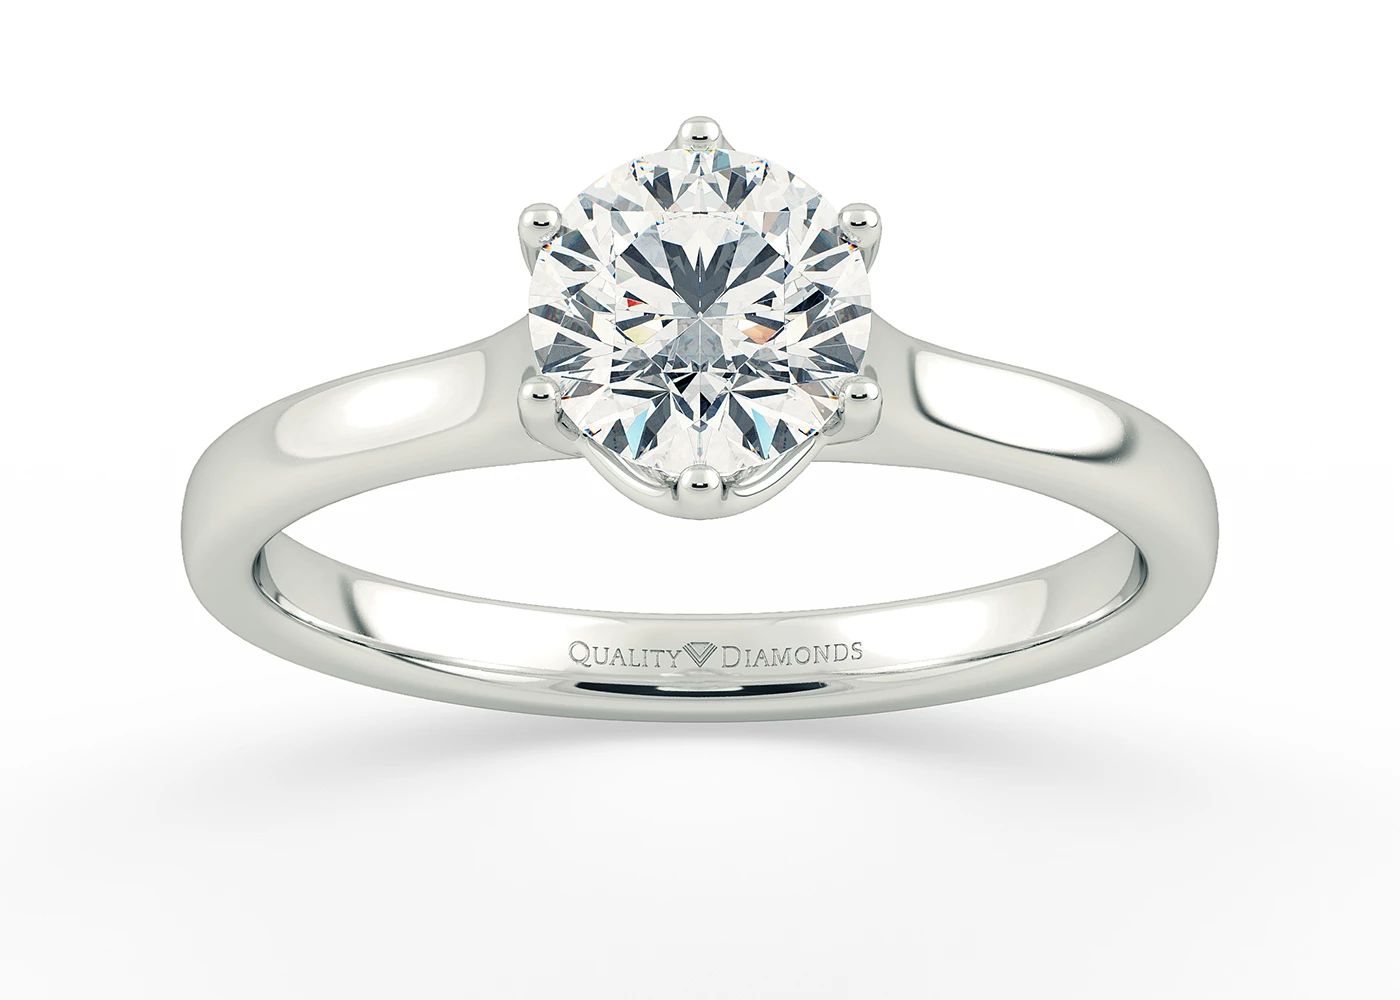 Six Claw Round Brilliant Promessa Diamond Ring in 18K White Gold